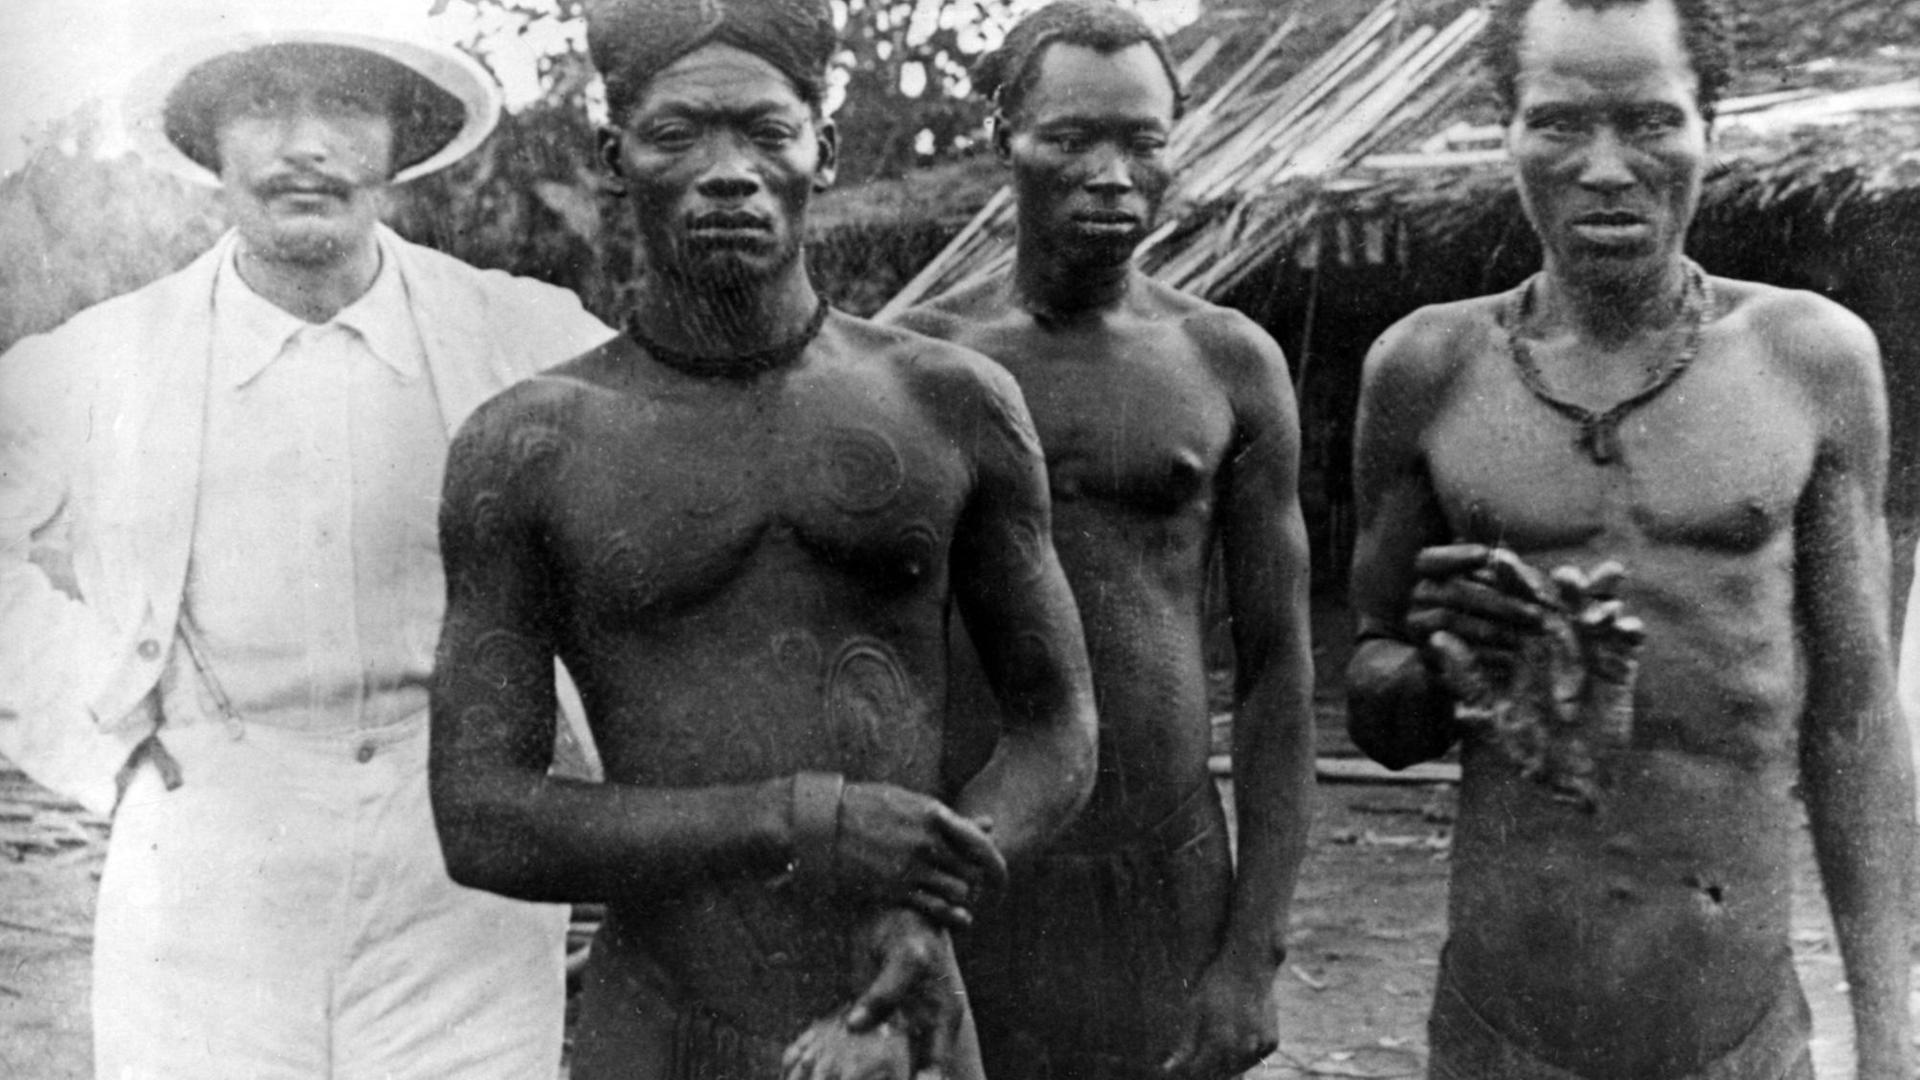 Das Bild ist ungefähr aus dem Jahr 1904. Ein Missionar und zwei kongolesische Männer sind zu sehen.